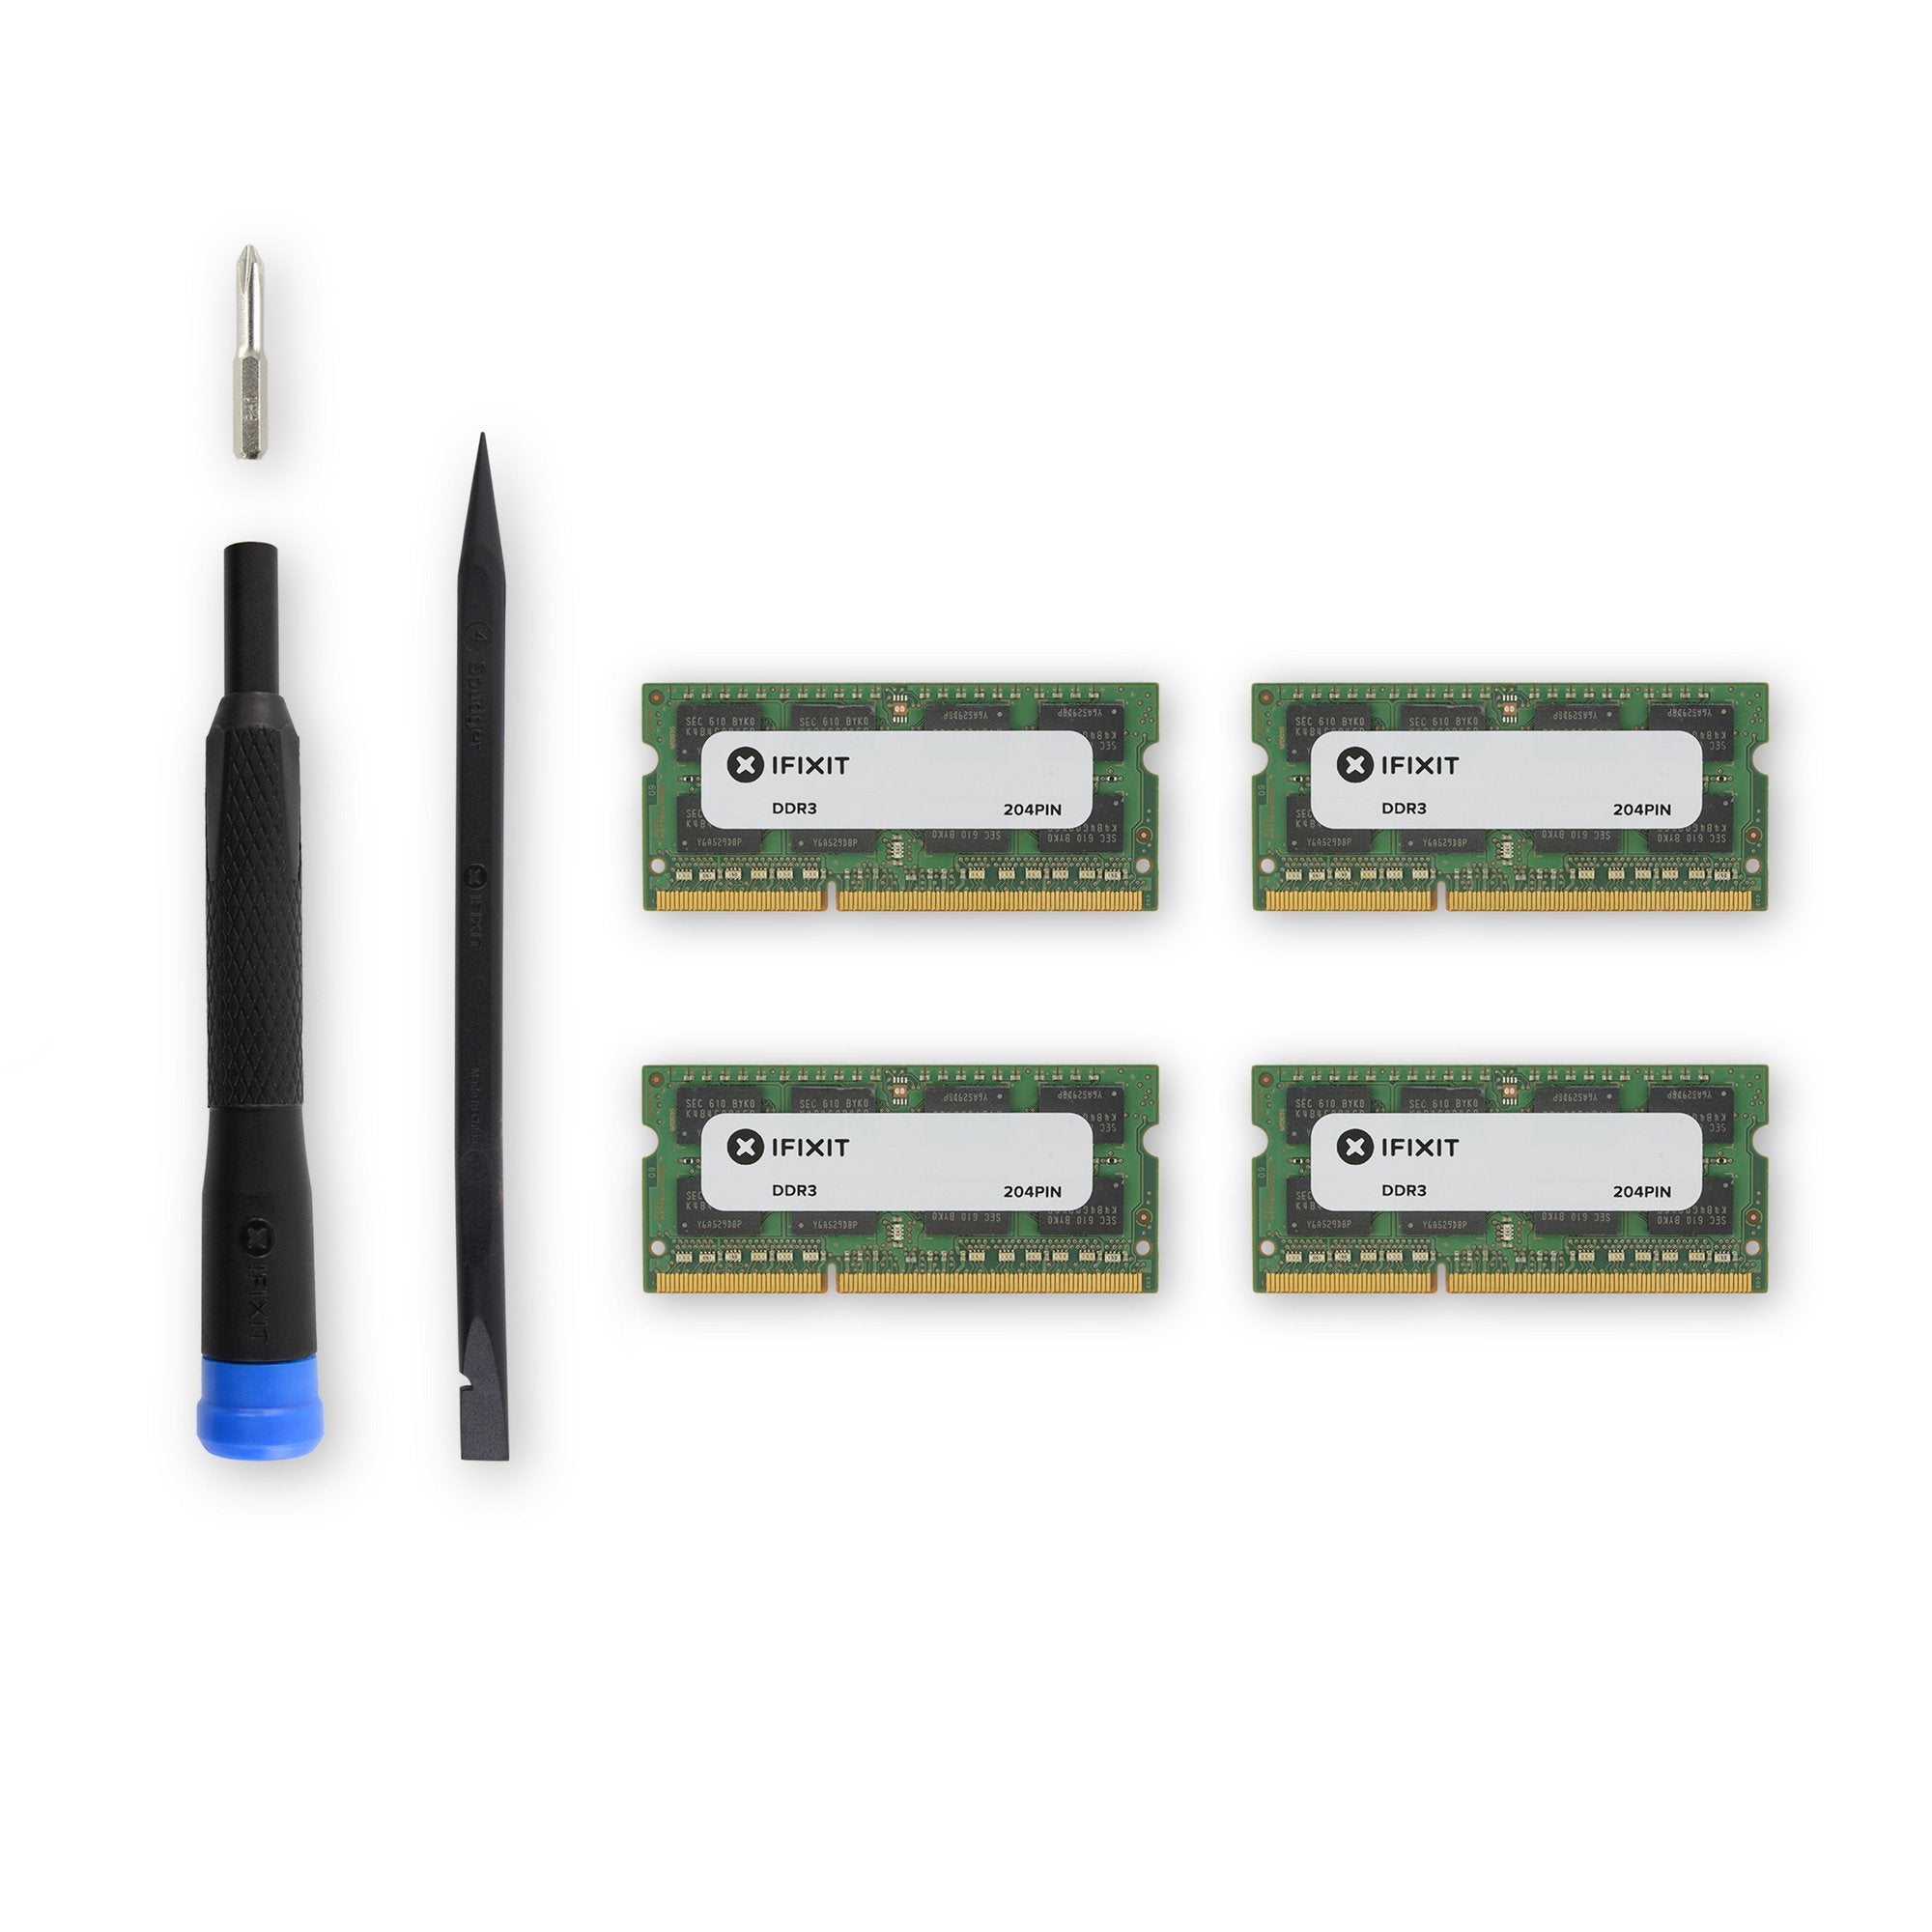 iMac Intel 21.5" EMC 2496 (Late 2011 EDU) Memory Maxxer RAM Upgrade Kit